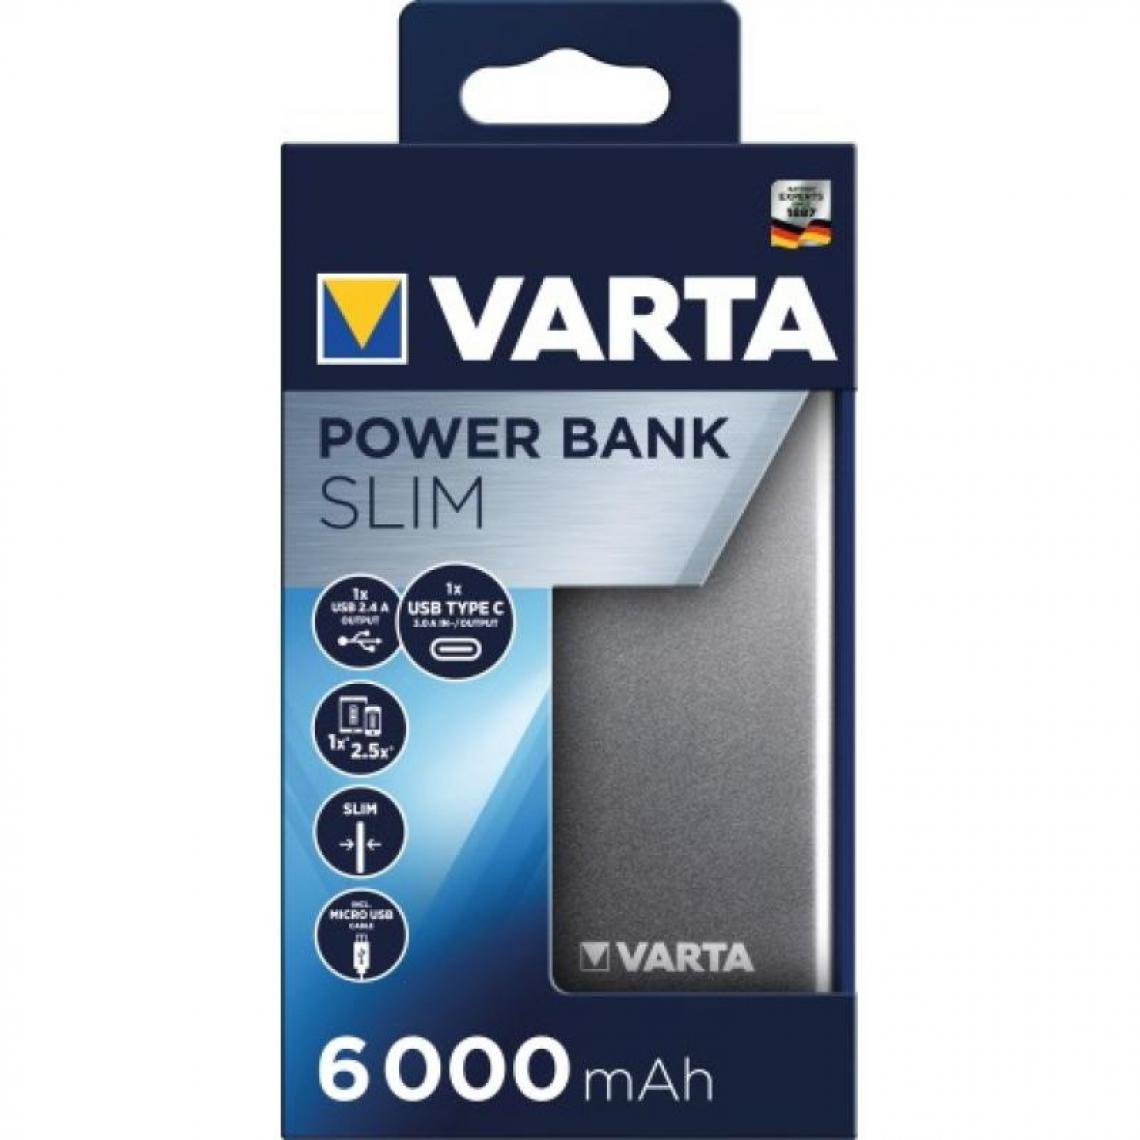 Varta - Batterie de secours Powerbank Slim 18000 - Blocs multiprises